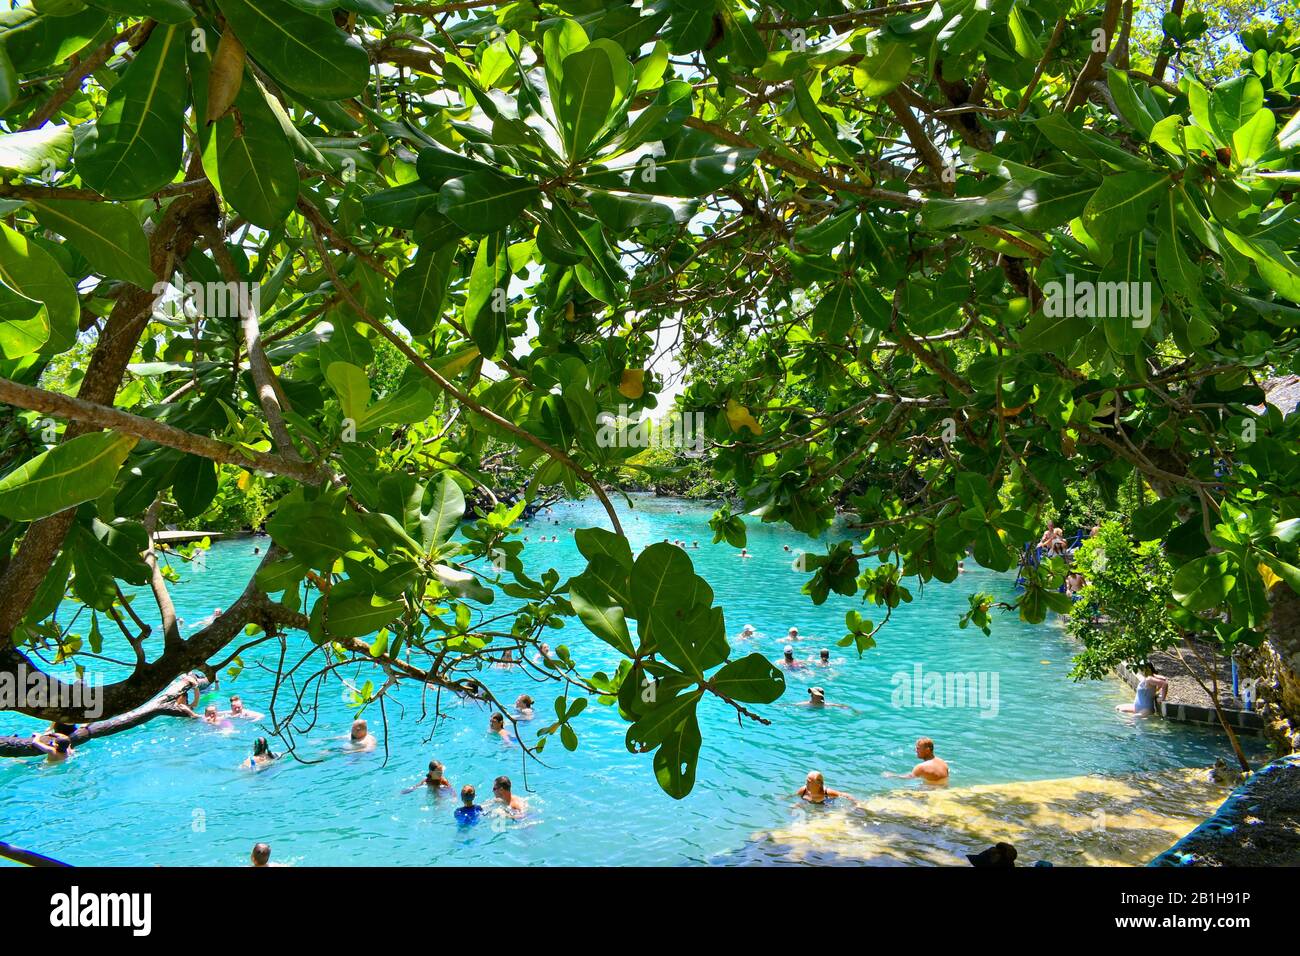 Port Vila, Vanuatu - 14 février 2020: Le Lagon bleu est une destination touristique populaire à Vanuatu. Banque D'Images